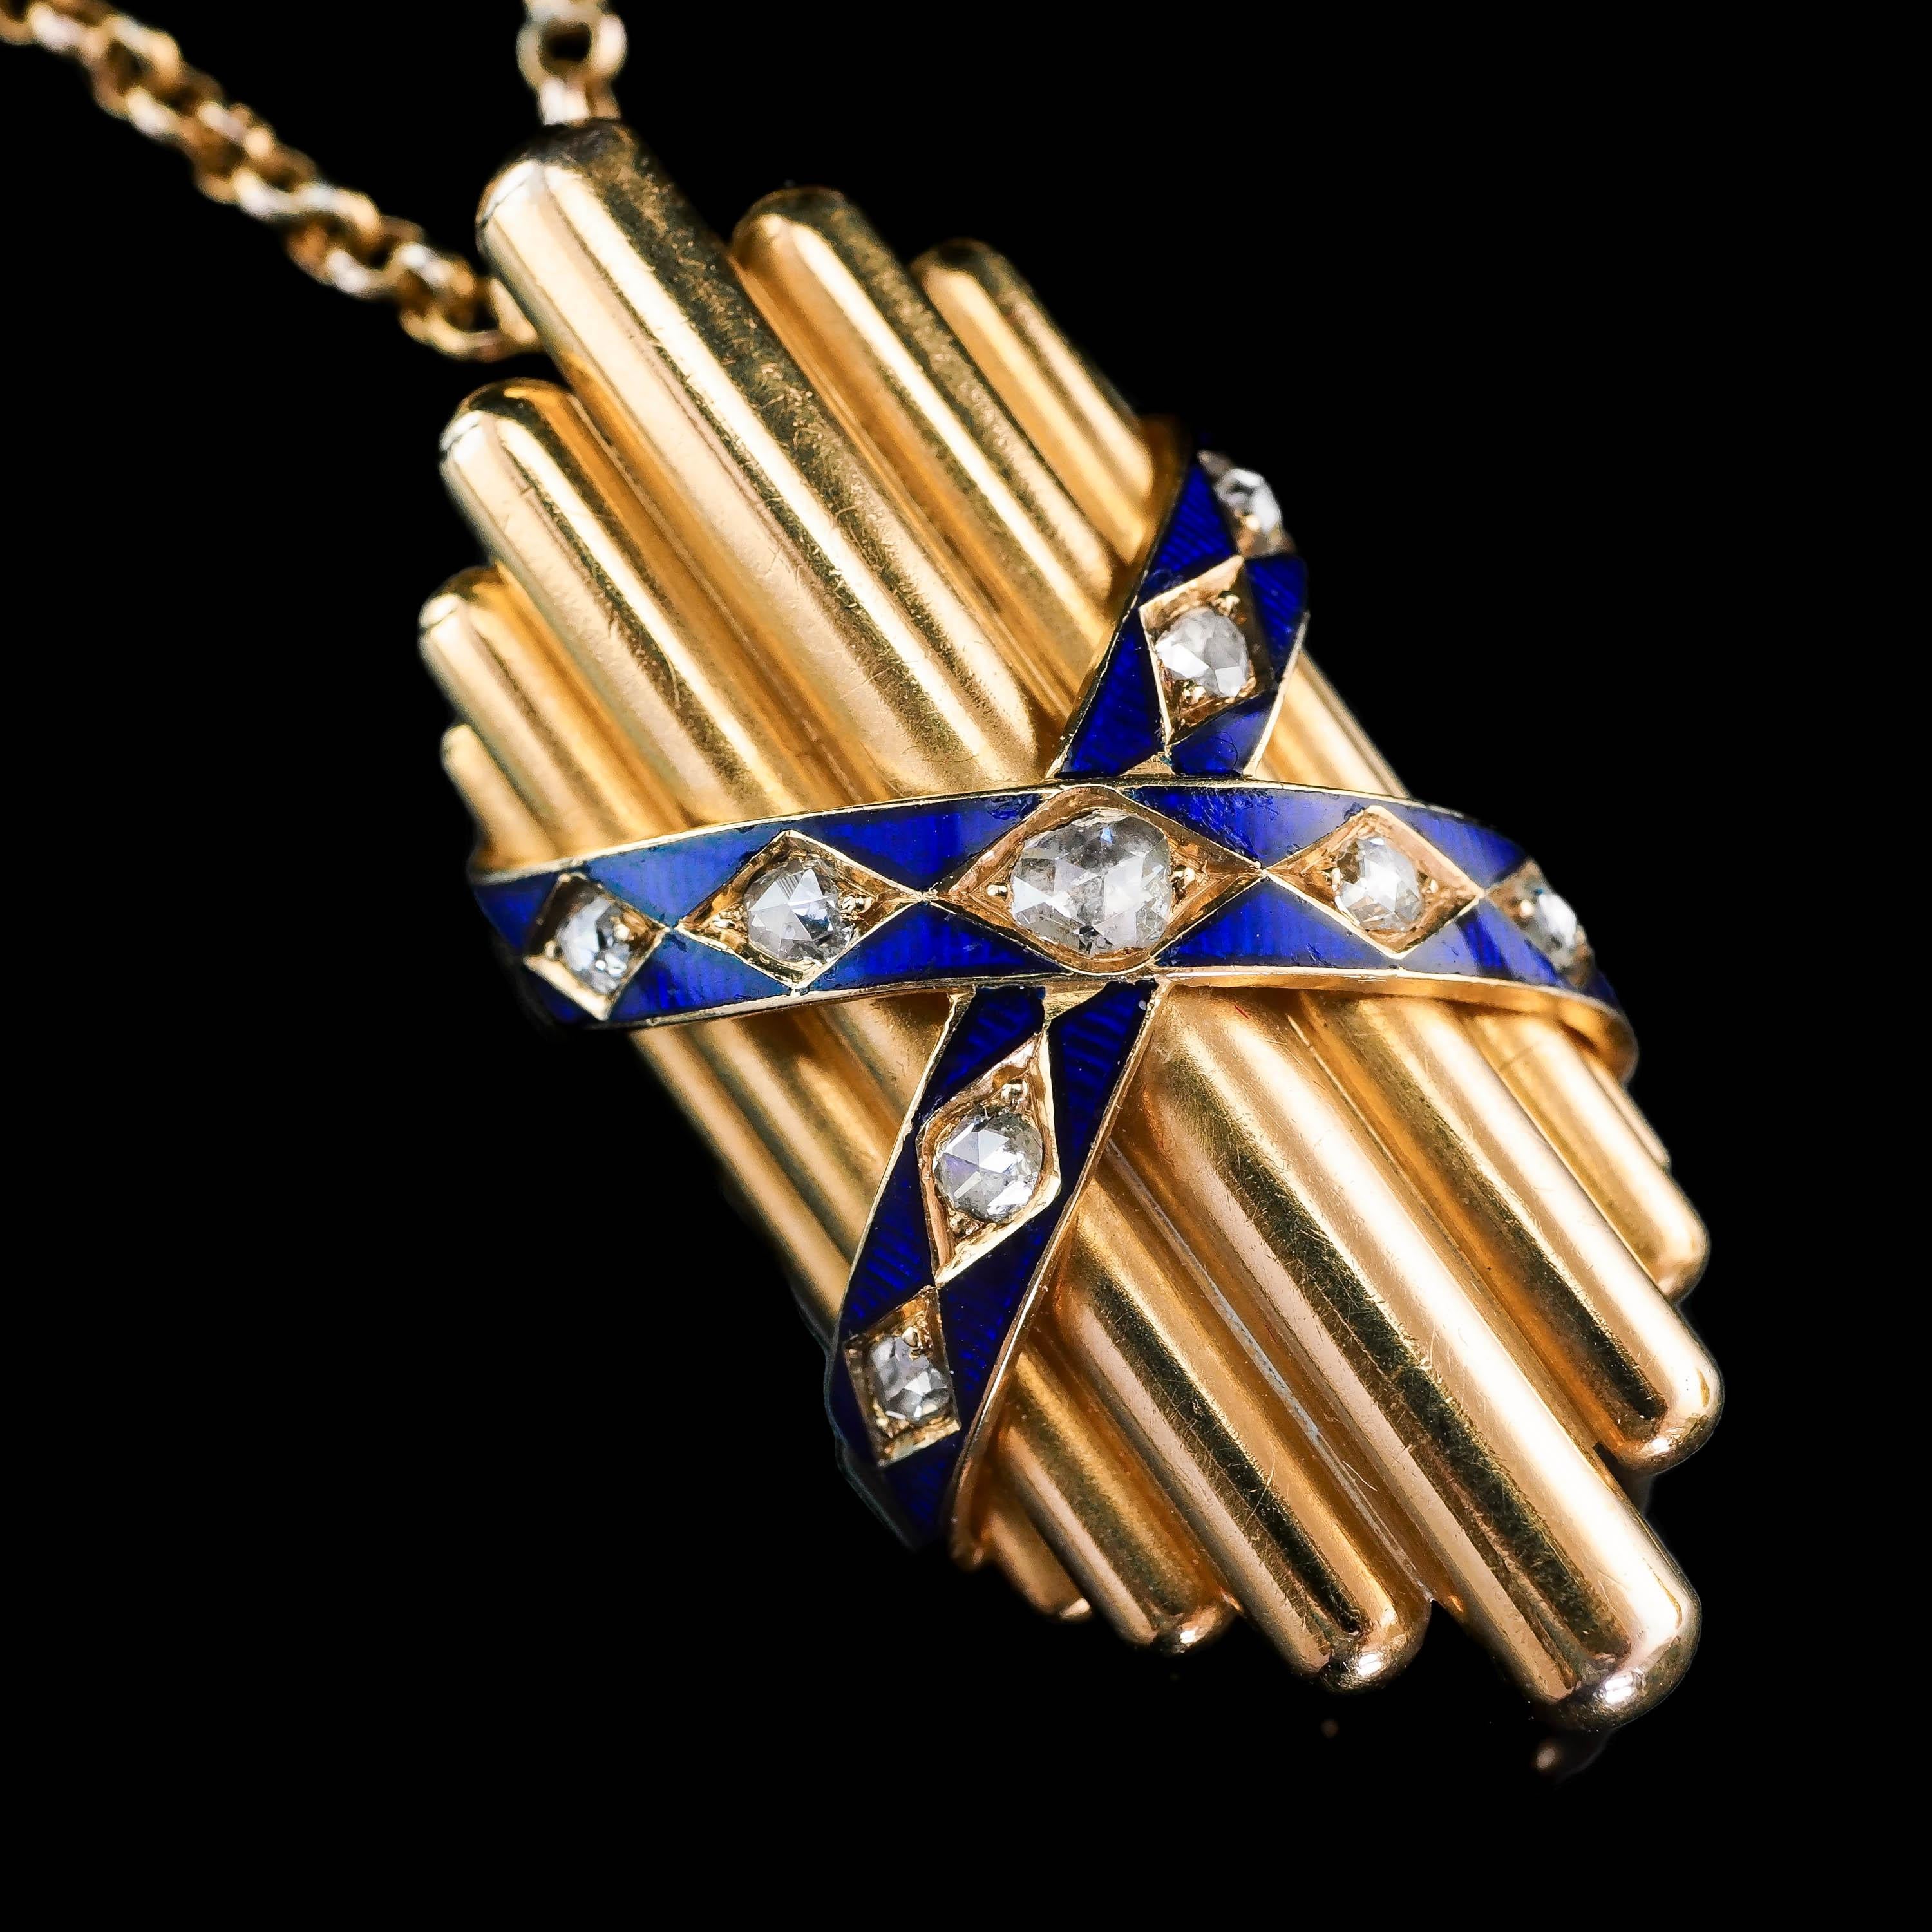 Antique 18K Gold Diamond Rose Cut Pendant Necklace with Blue Enamel - c.1880 For Sale 3